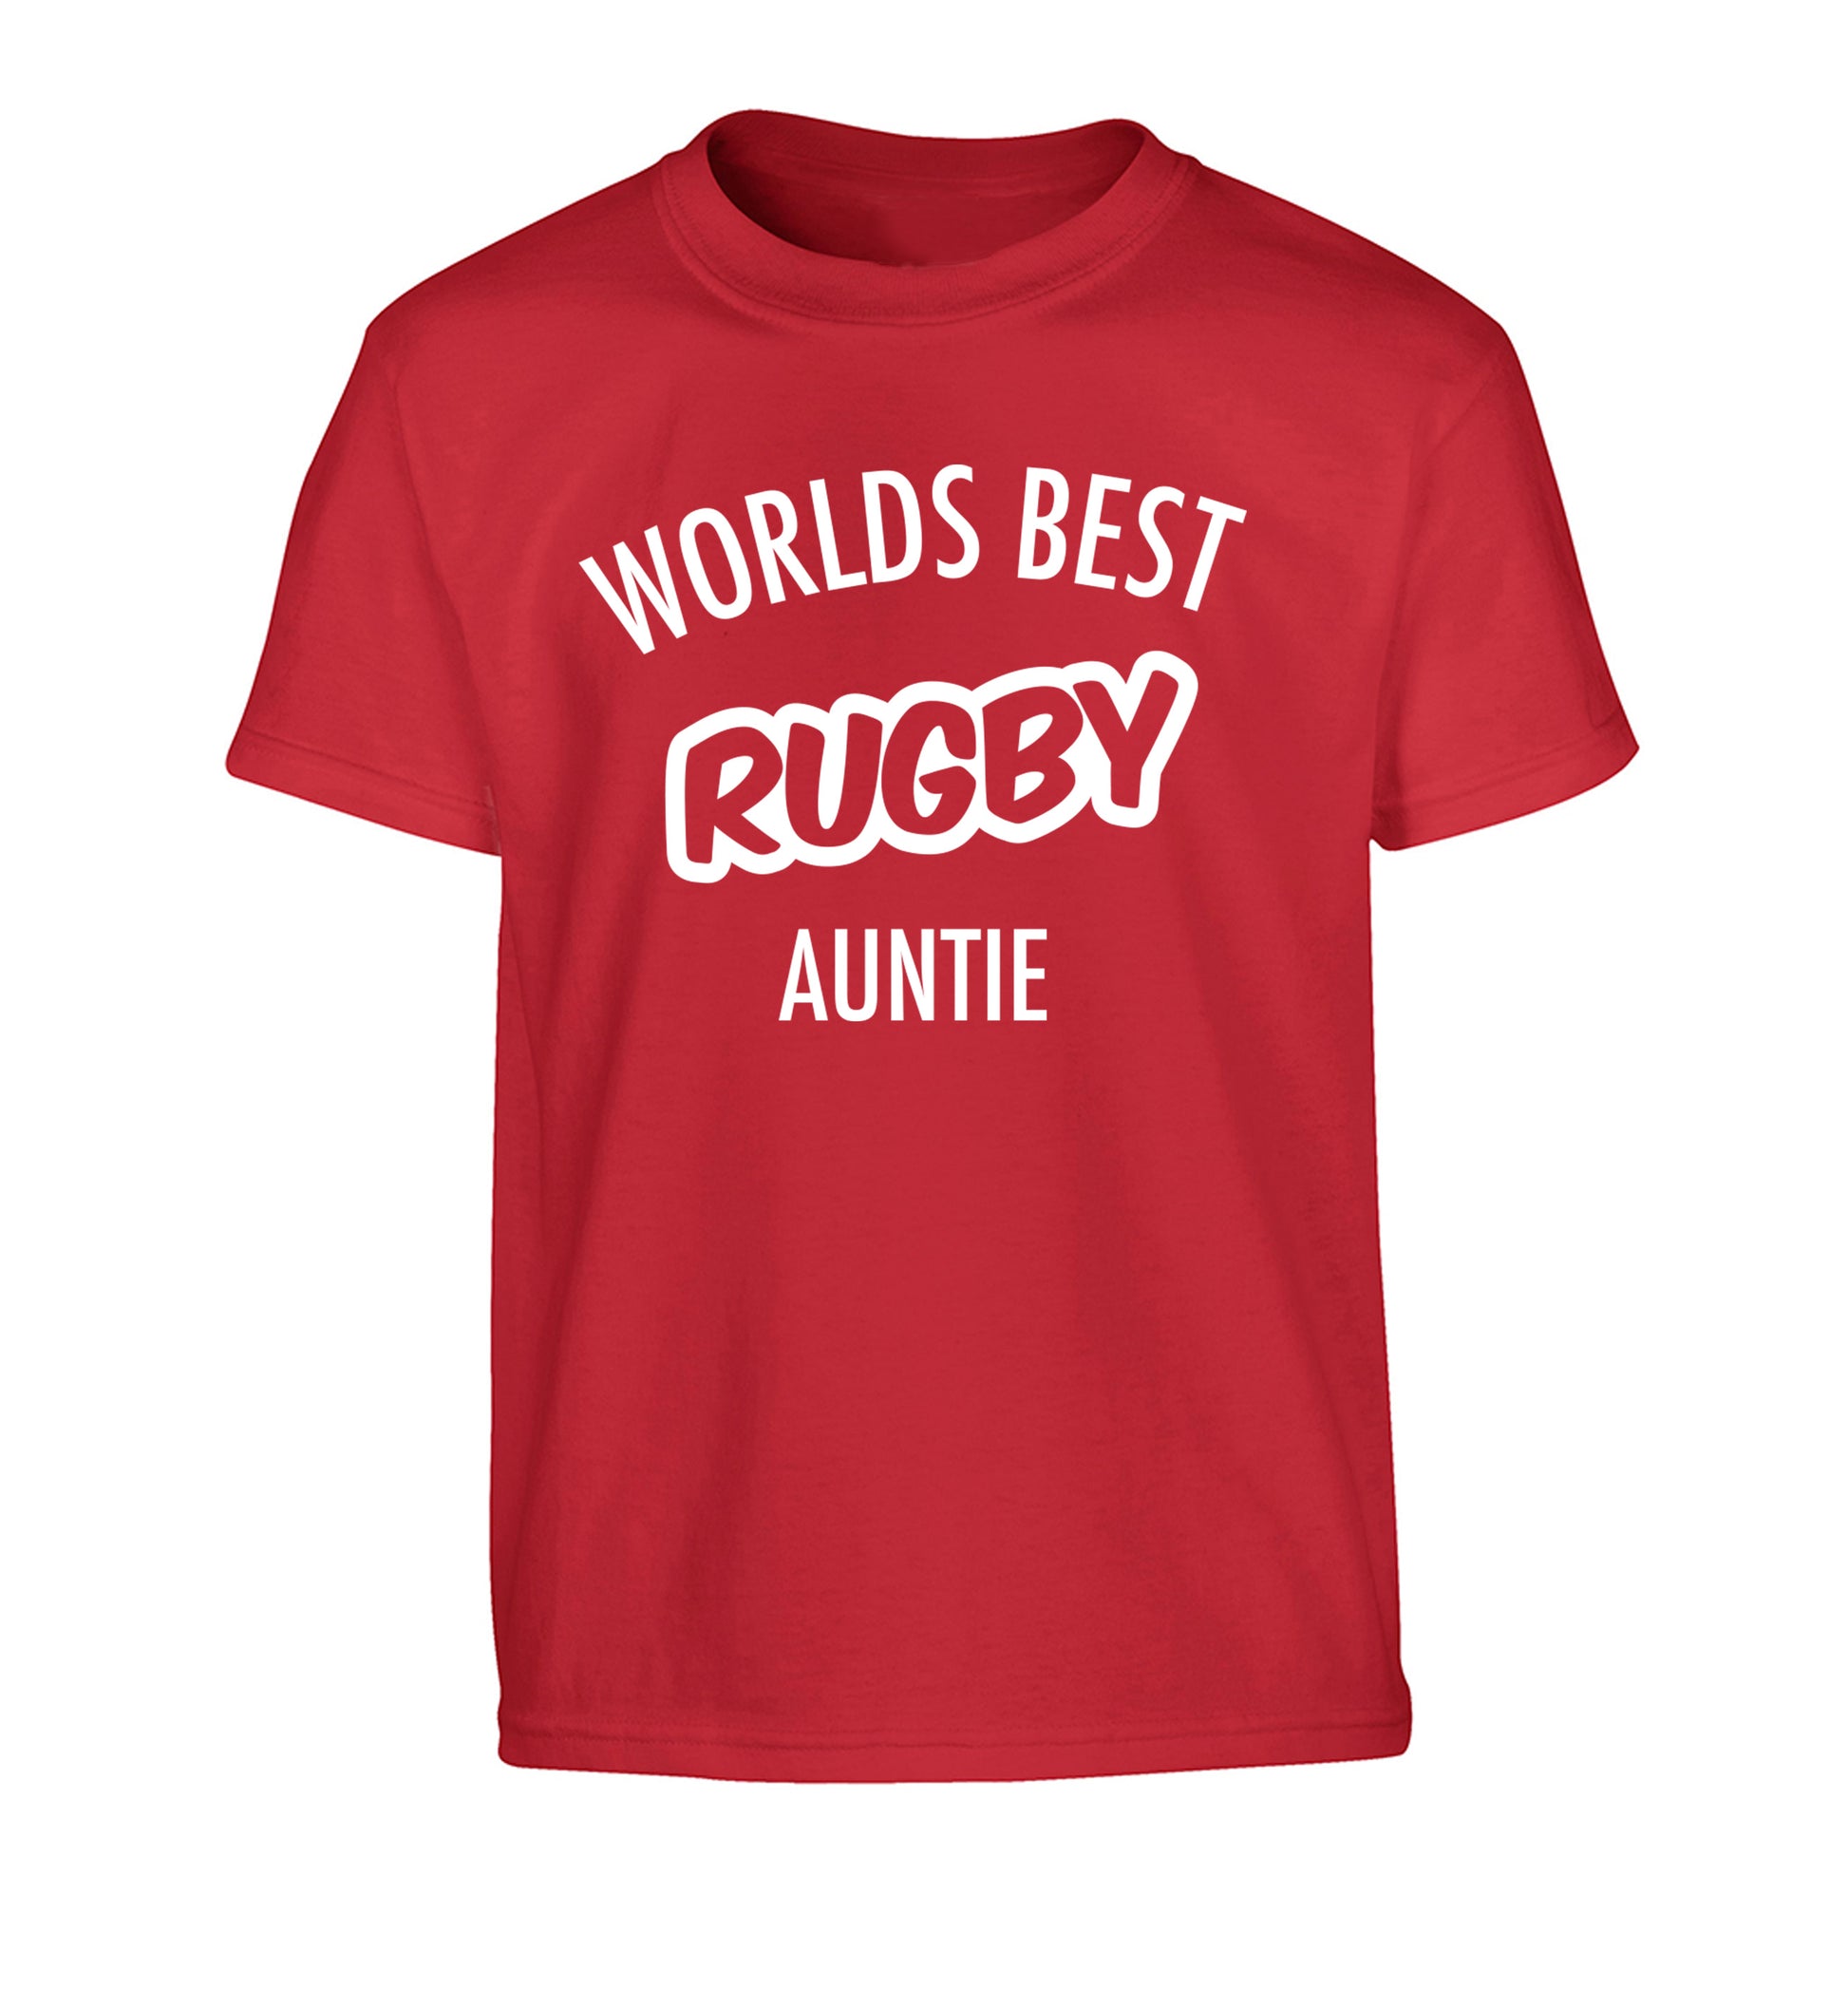 Worlds best rugby auntie Children's red Tshirt 12-13 Years